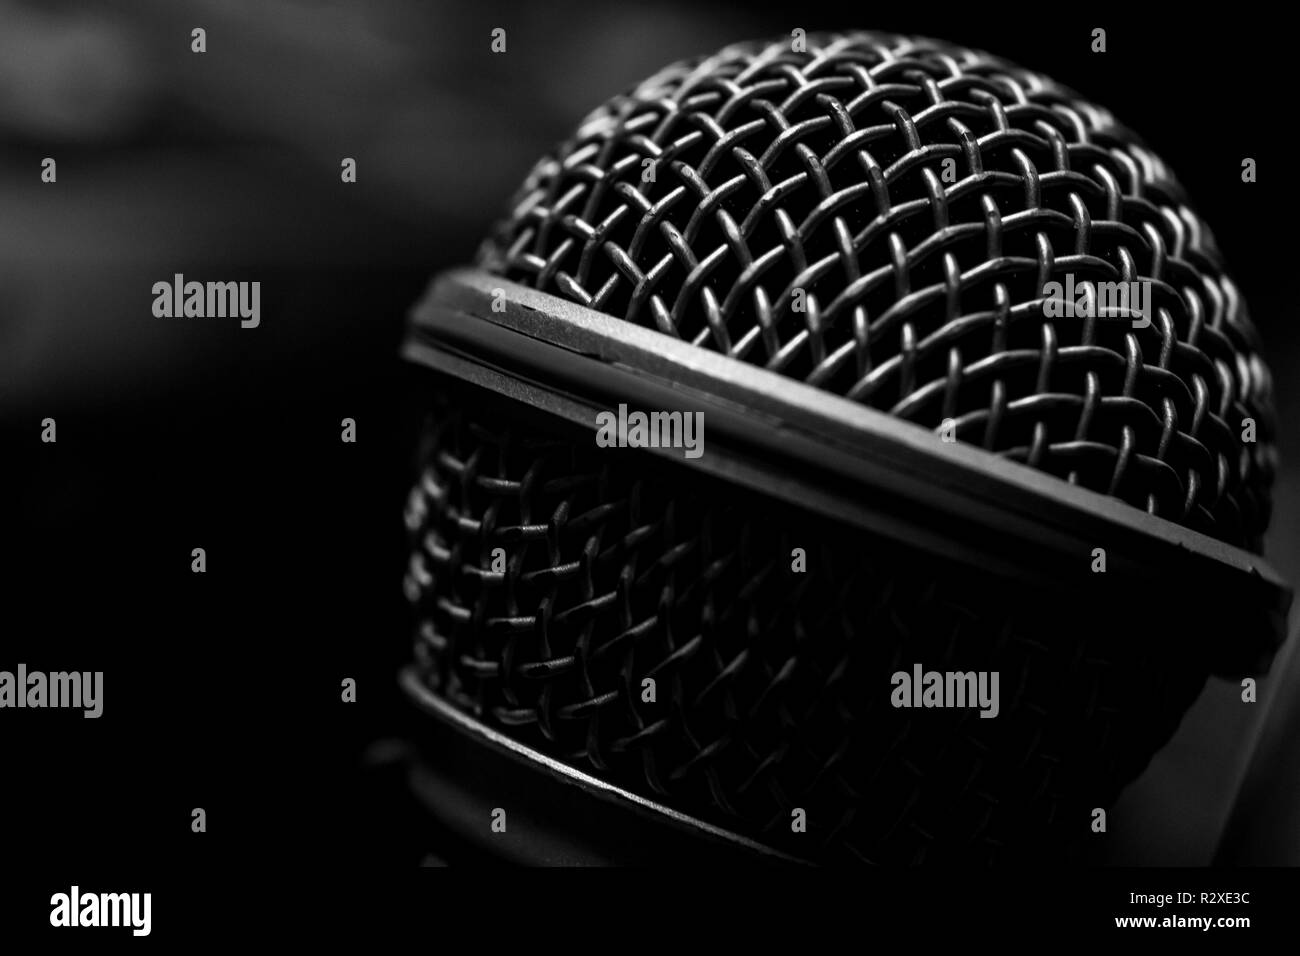 Microphone audio professionnelle monochrome auvent selective focus Banque D'Images